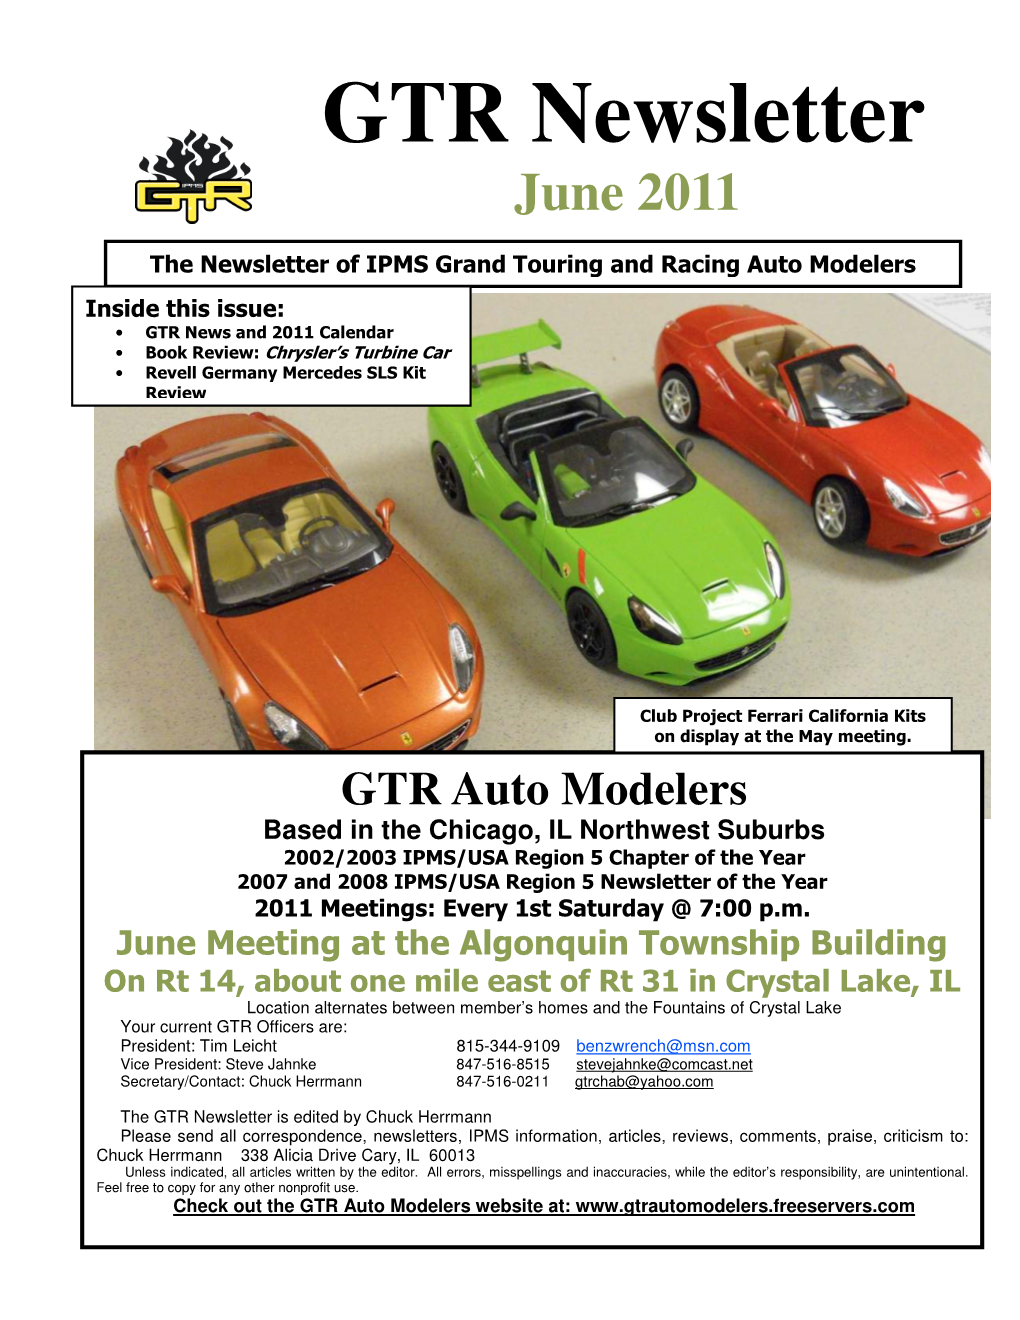 06 2011 GTR News